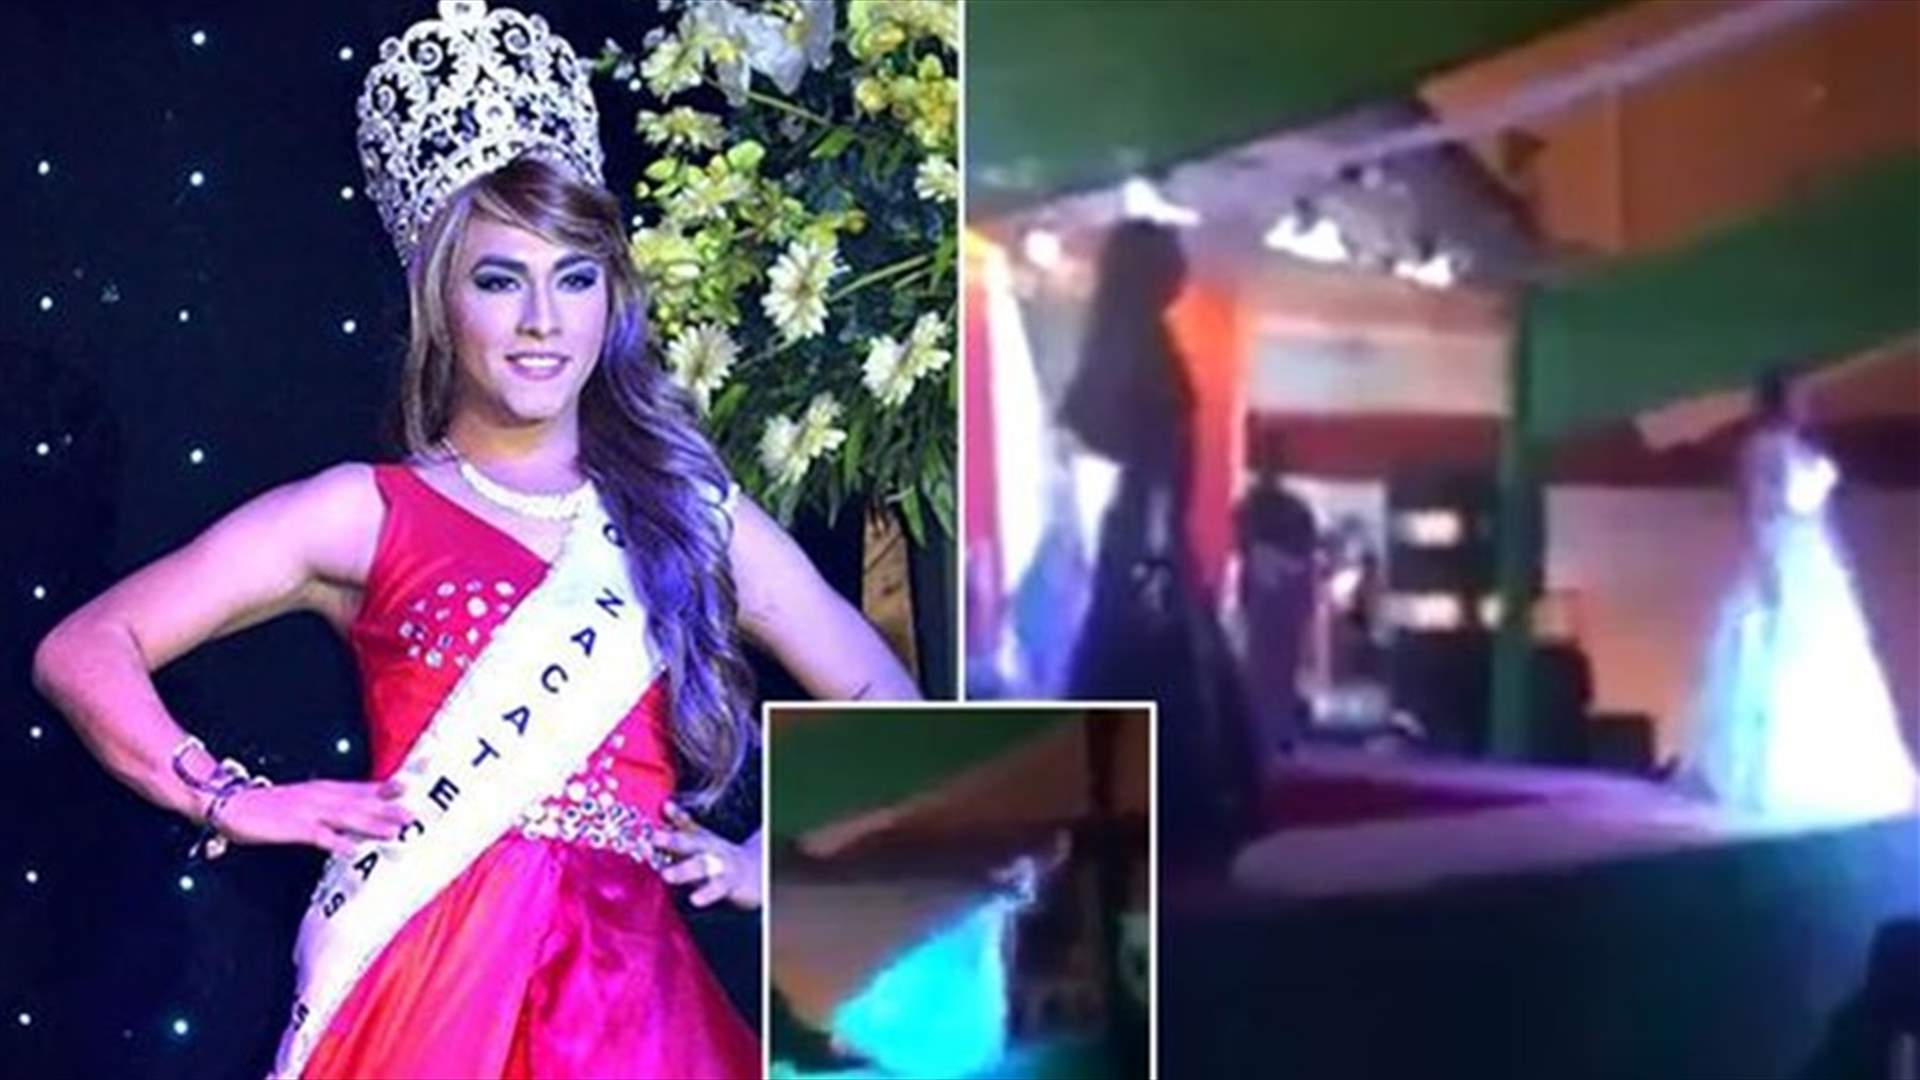 بالفيديو – حفل انتخاب ملكة جمال المتحولين جنسياً يتحوّل إلى فوضى بسبب الغيرة!